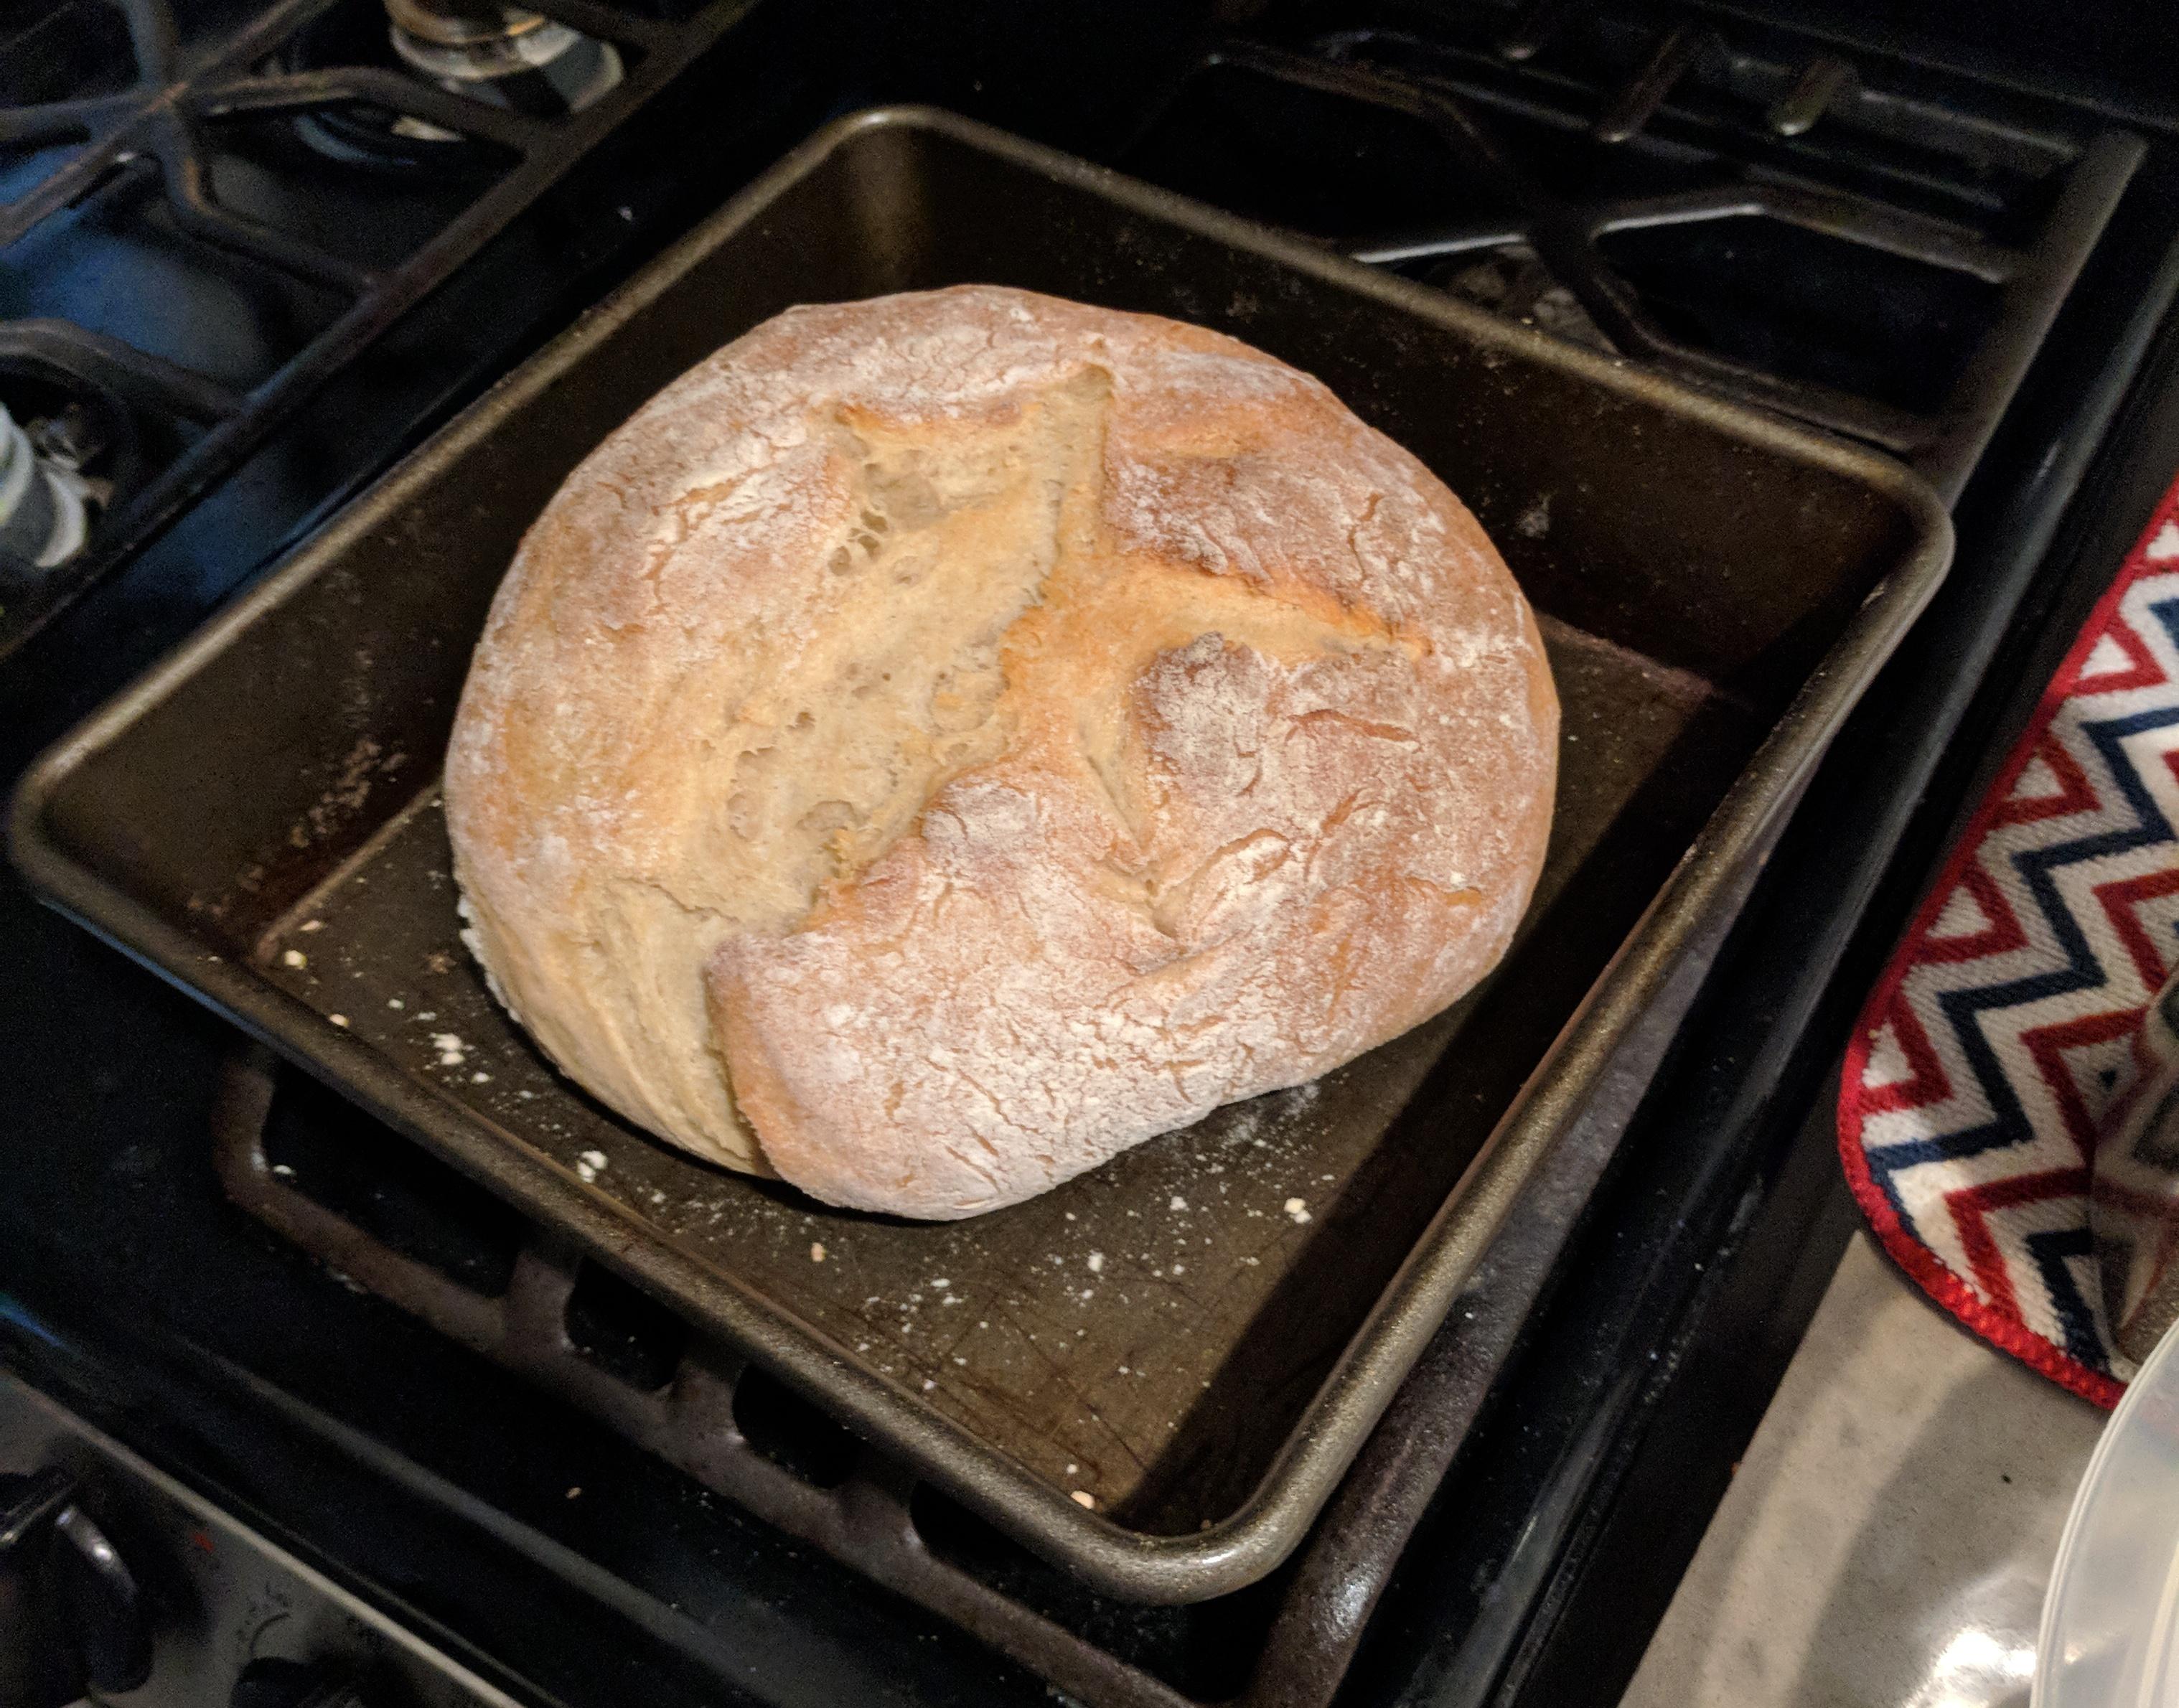 Bread as rock